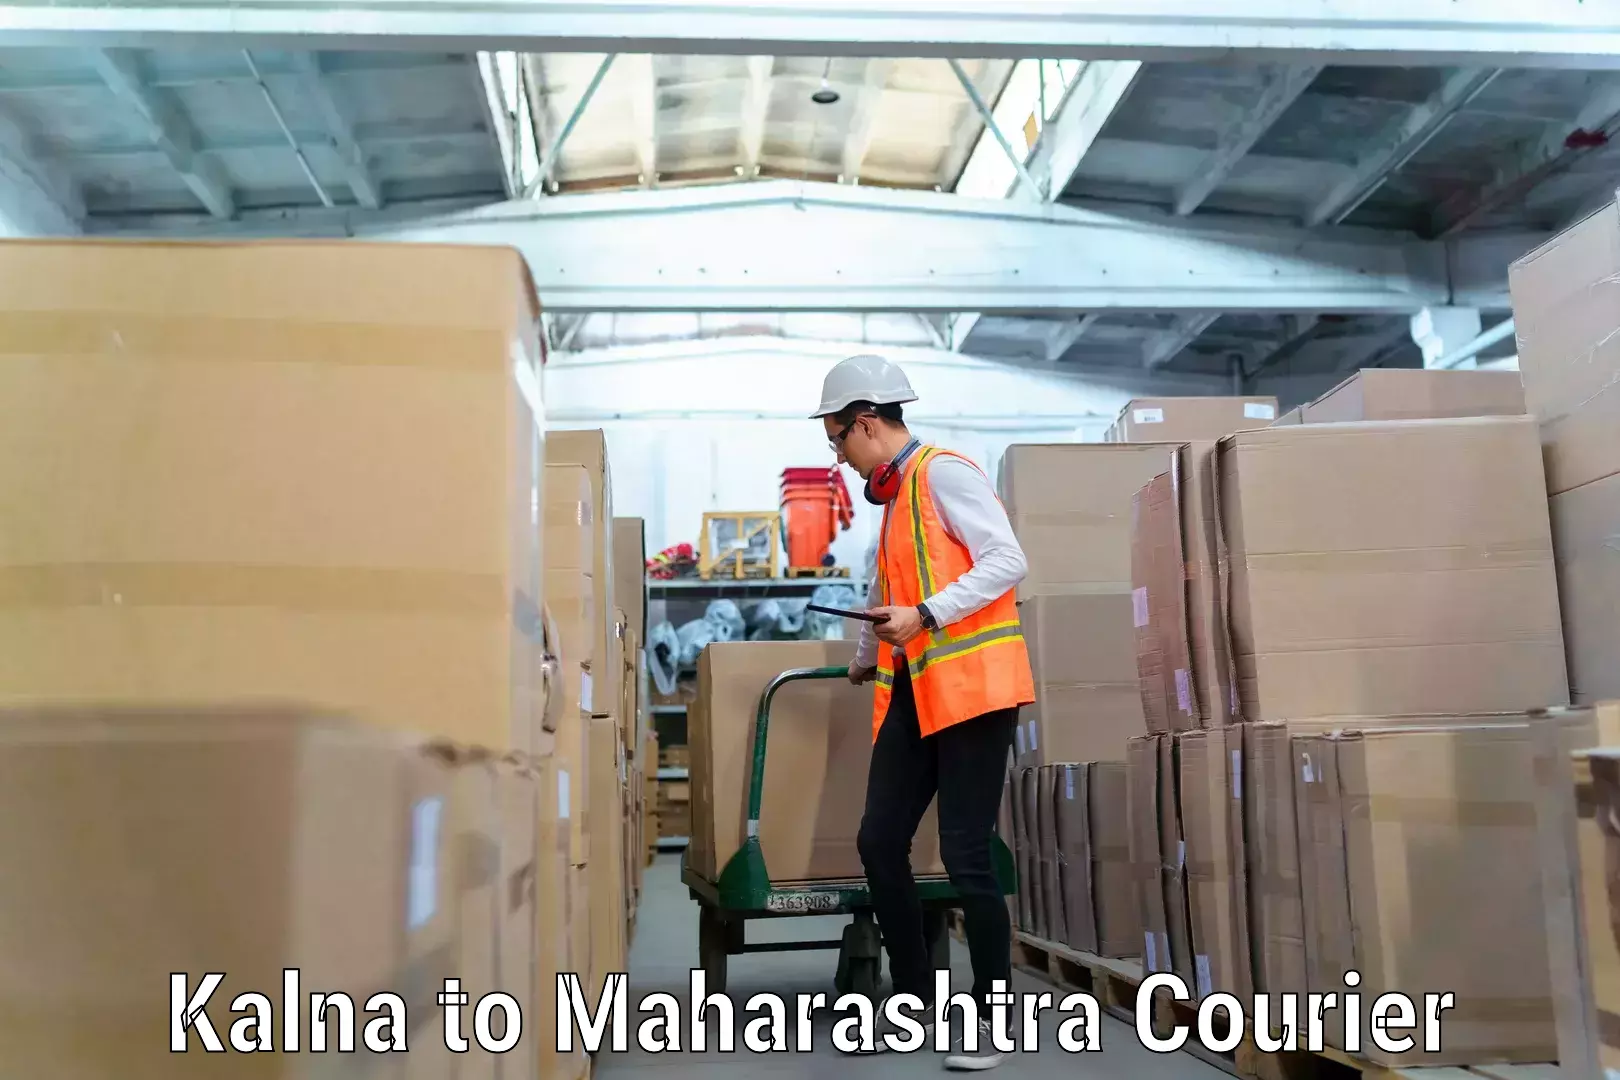 Specialized moving company Kalna to Maharashtra